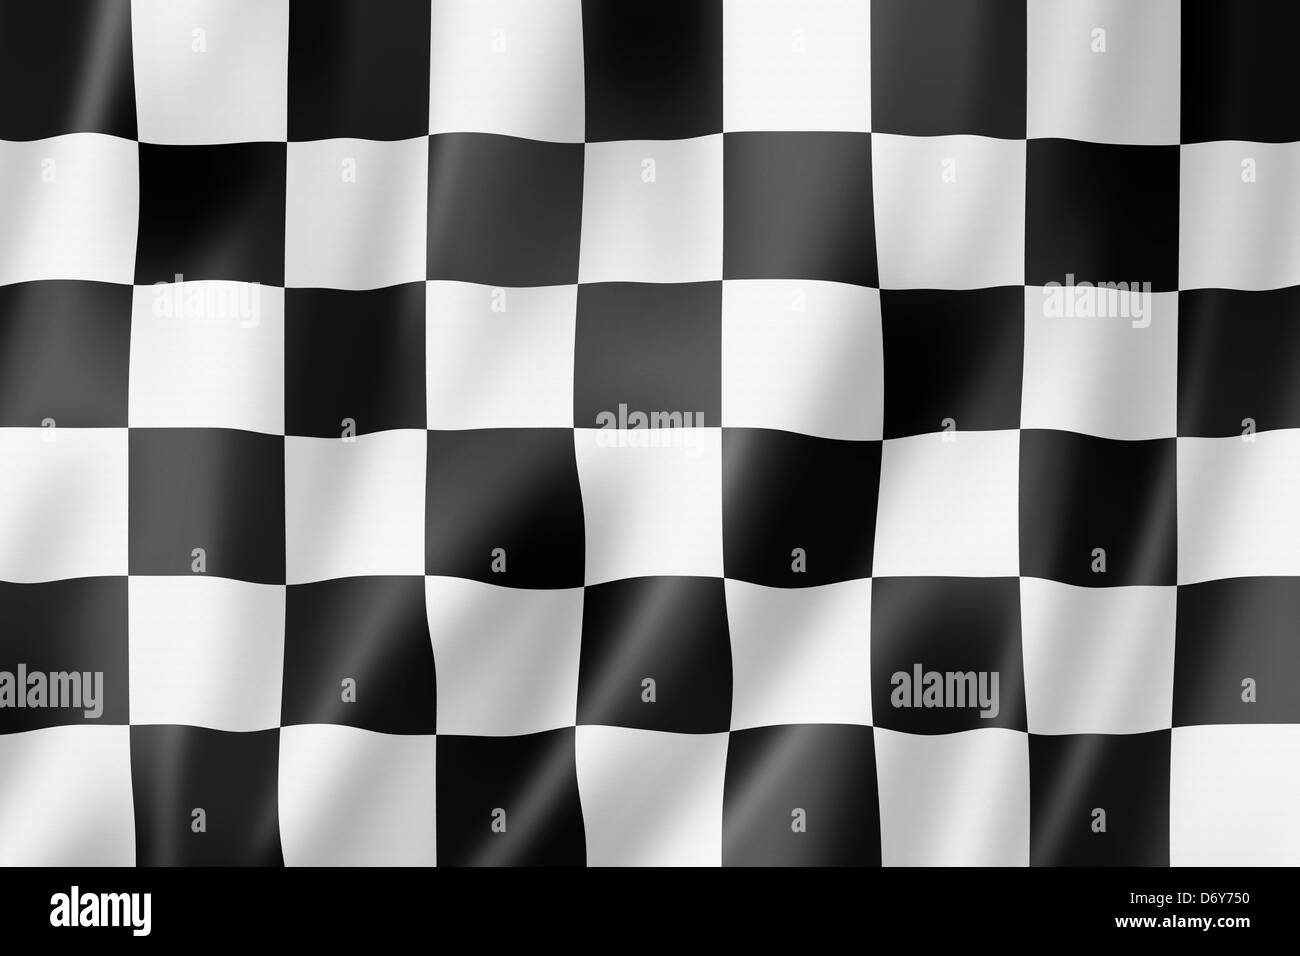 Fin de course automobile drapeau à damiers, le rendu en trois dimensions, finition satinée Banque D'Images